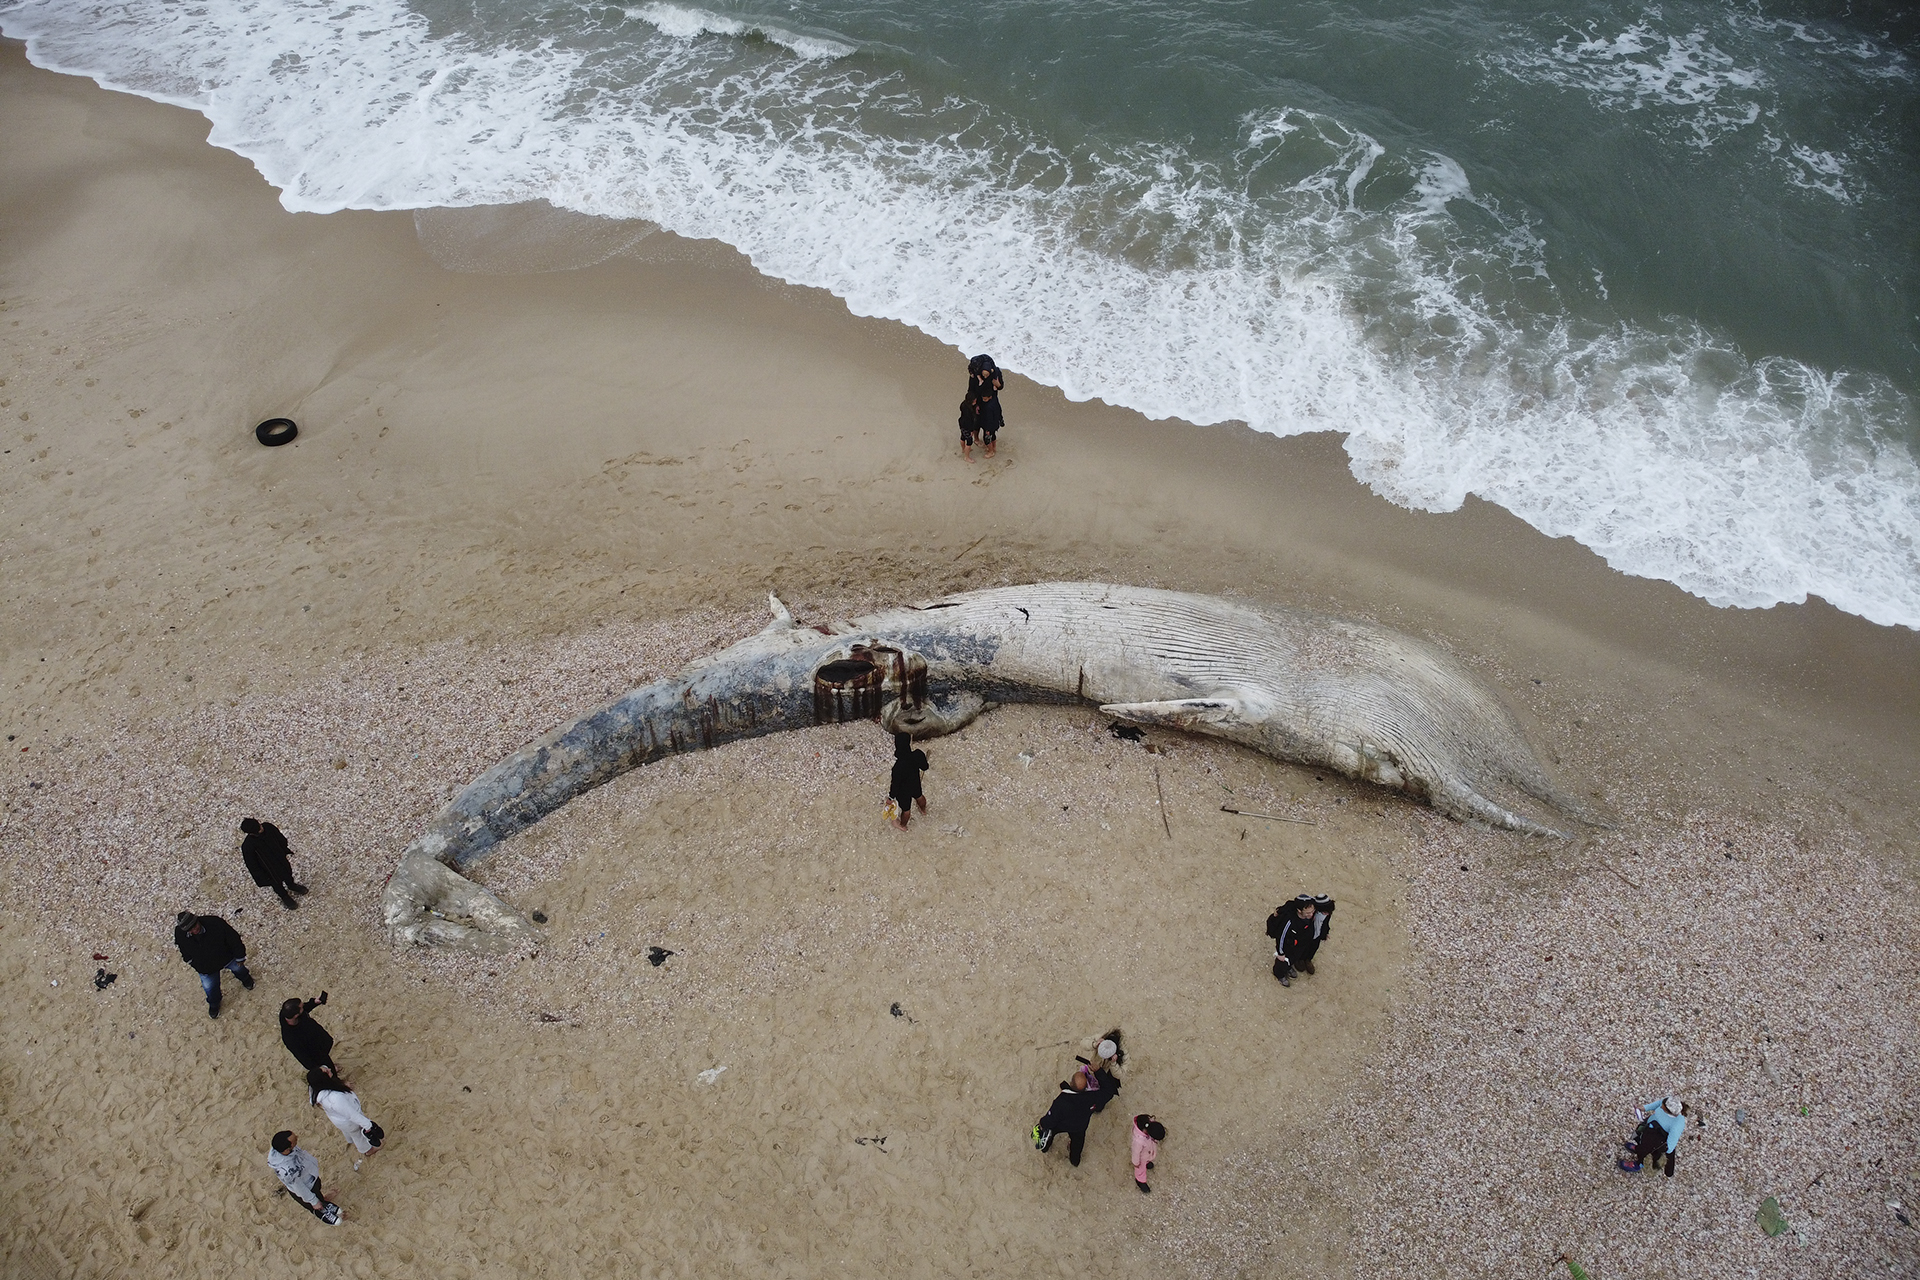 Negyventonnás, 18 méteres nagy ámbráscetet találtak holtan a kínai tengerparton